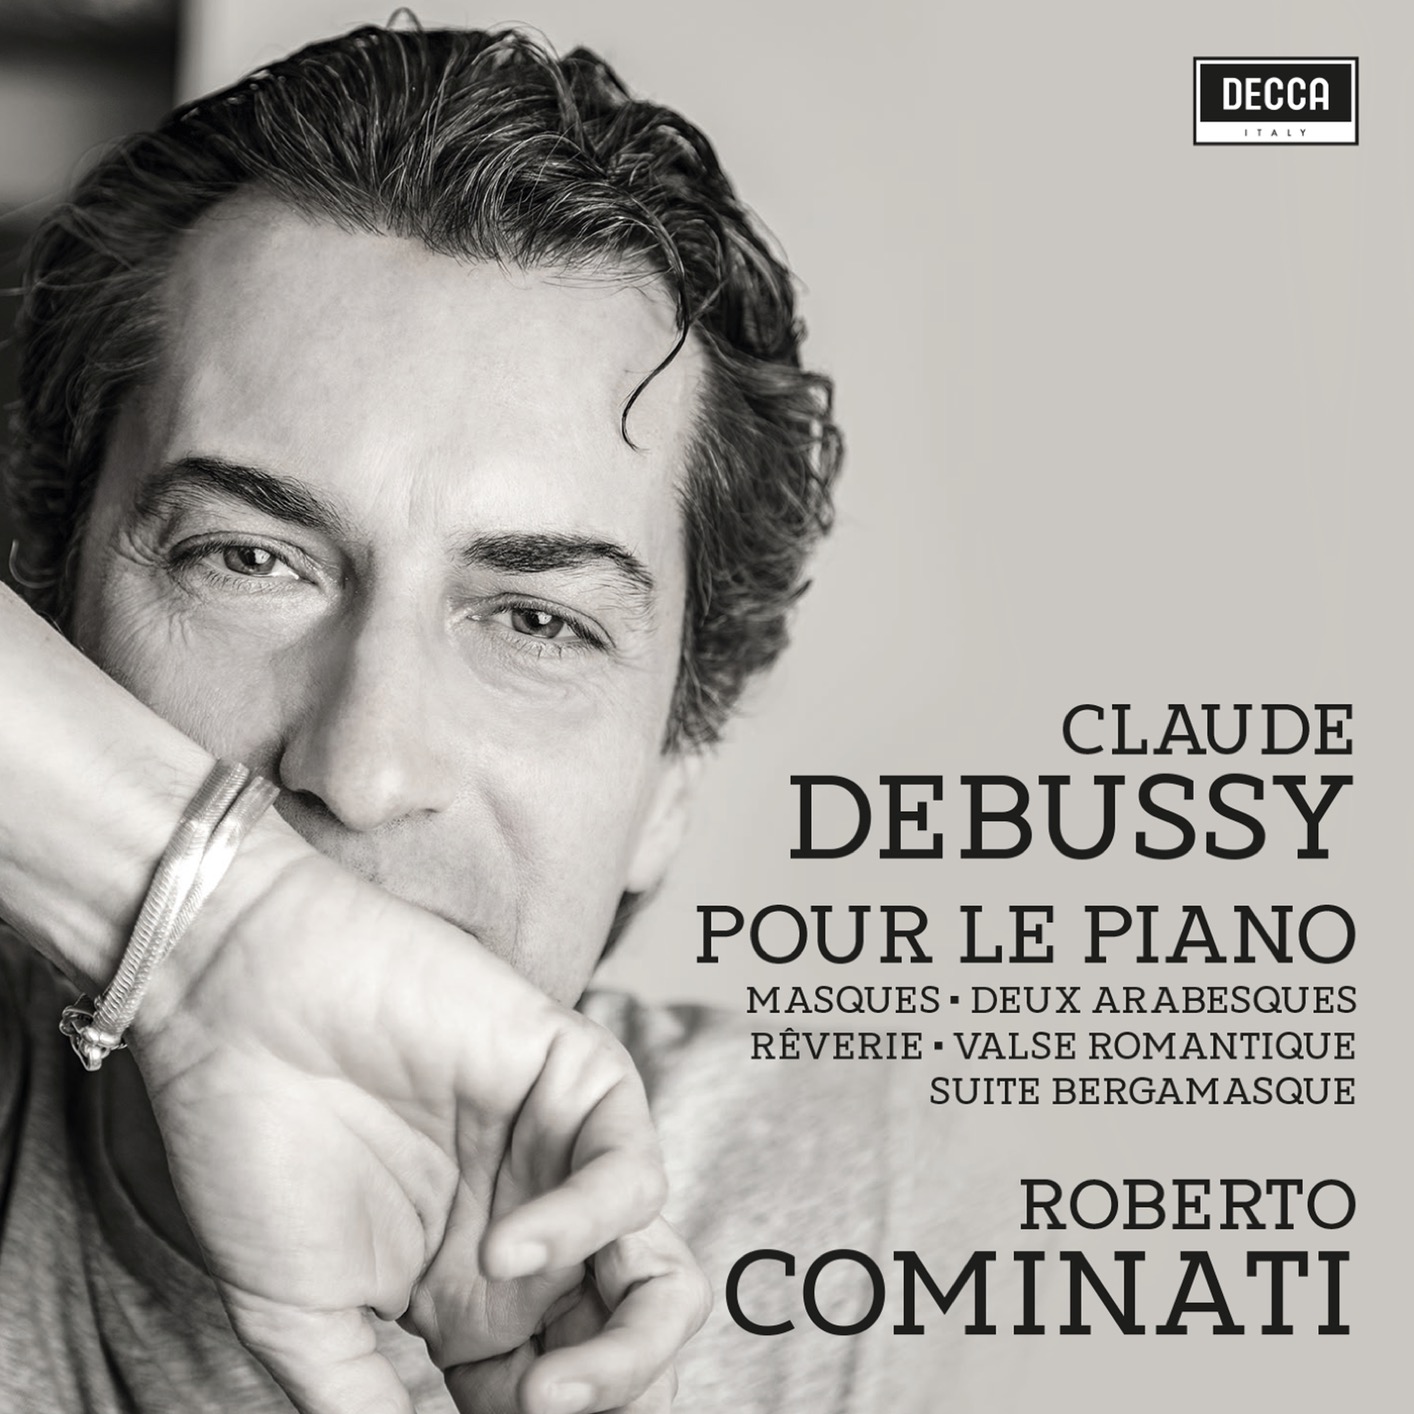 Roberto Cominati - Debussy: Piano Music (2019) [FLAC 24bit/96kHz]